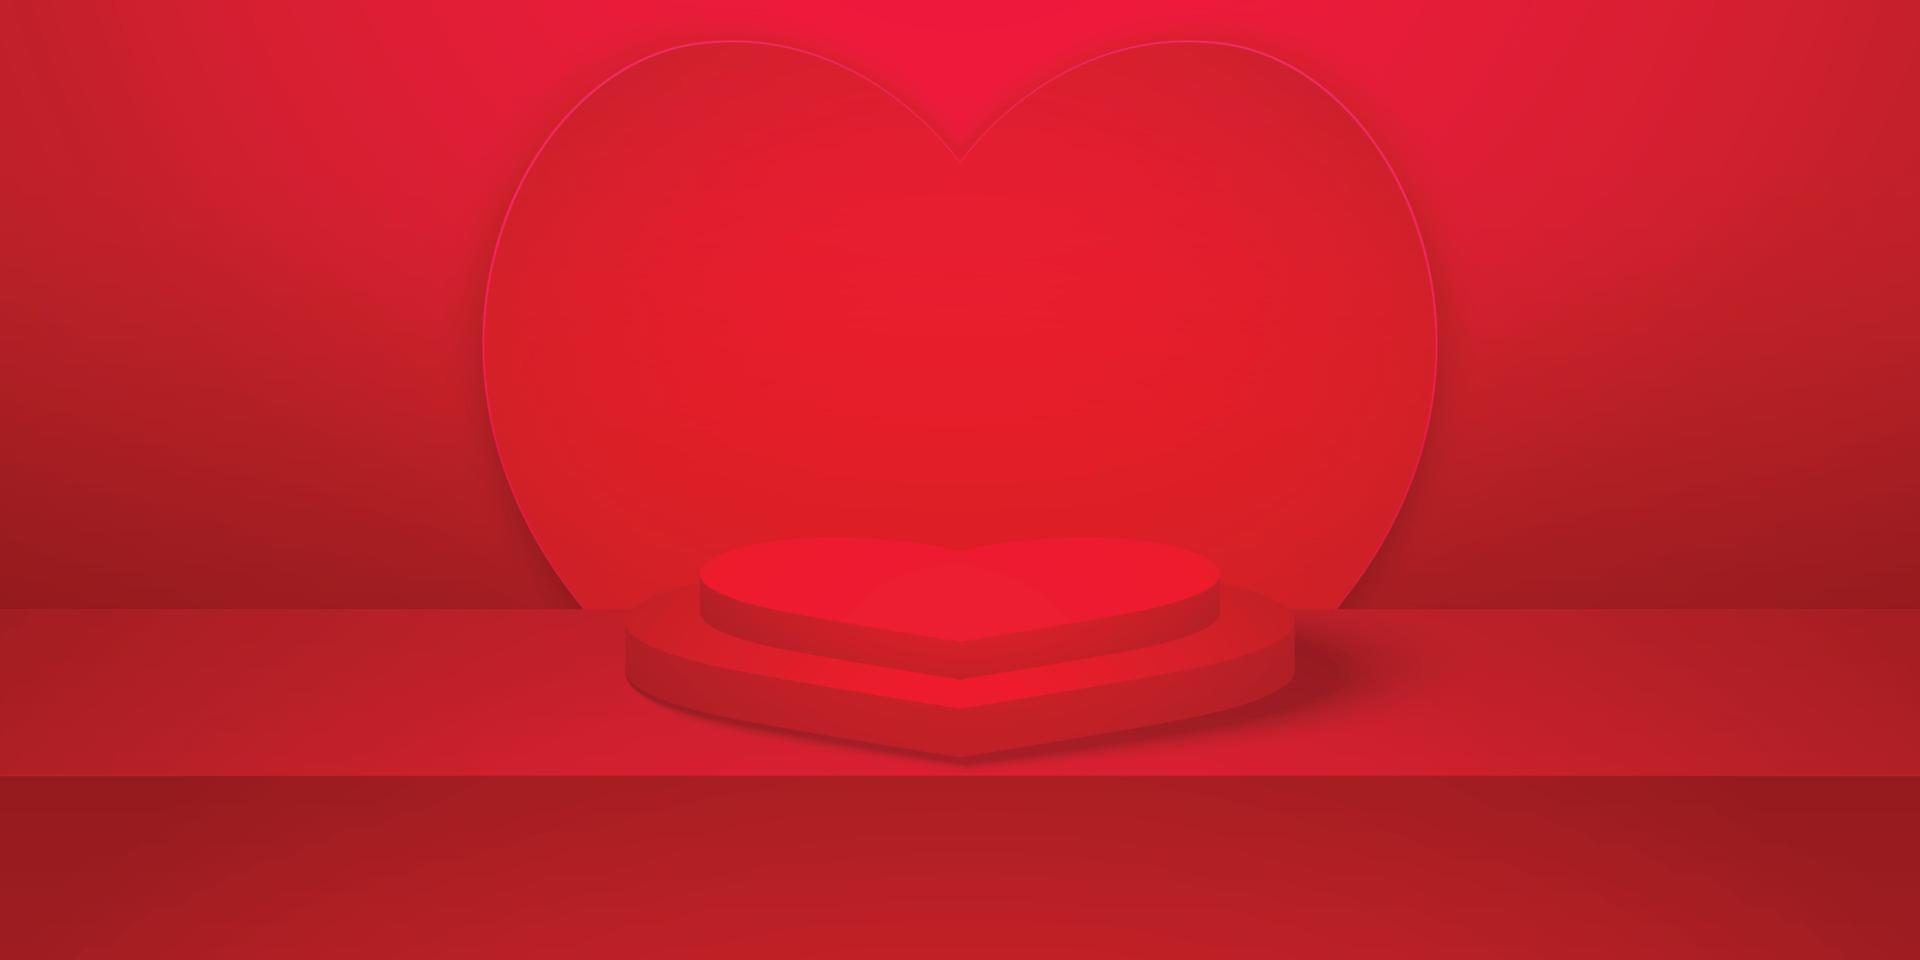 conceito de amor, pódio ou pedestal de formato de coração realista com sala de estúdio vazia vermelha, fundo de coração de produto mínimo, modelo de simulação para exibição, dia dos namorados vetor